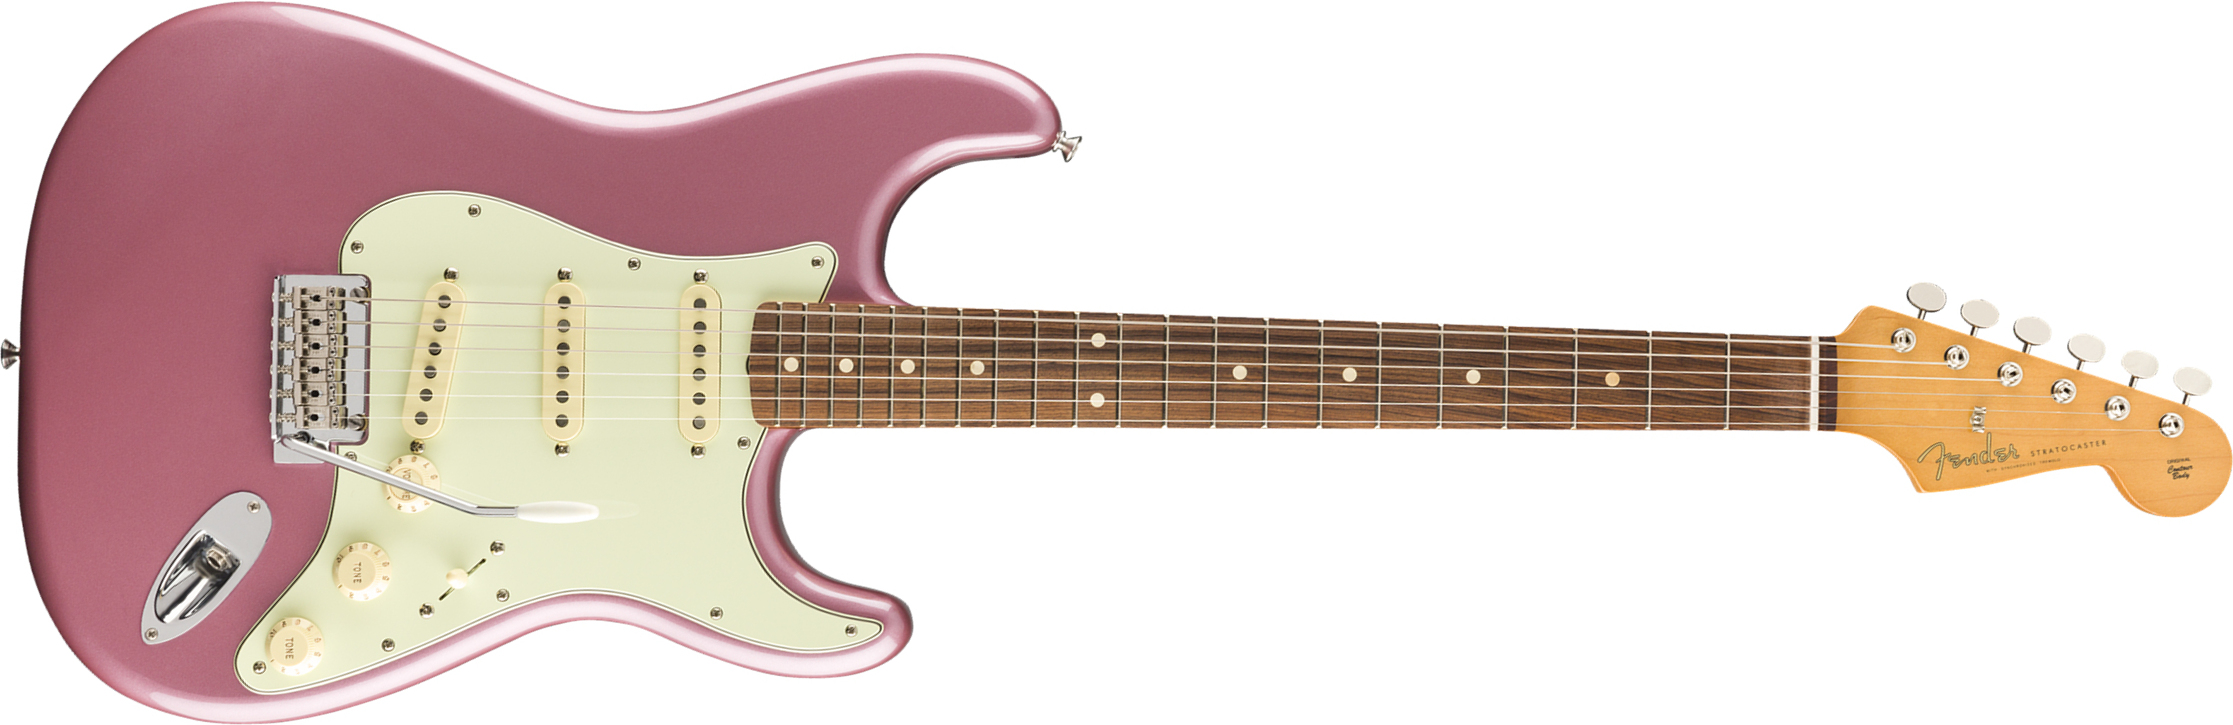 Fender Strat 60s Vintera Modified Mex Mn - Burgundy Mist - Guitare Électrique Forme Str - Main picture